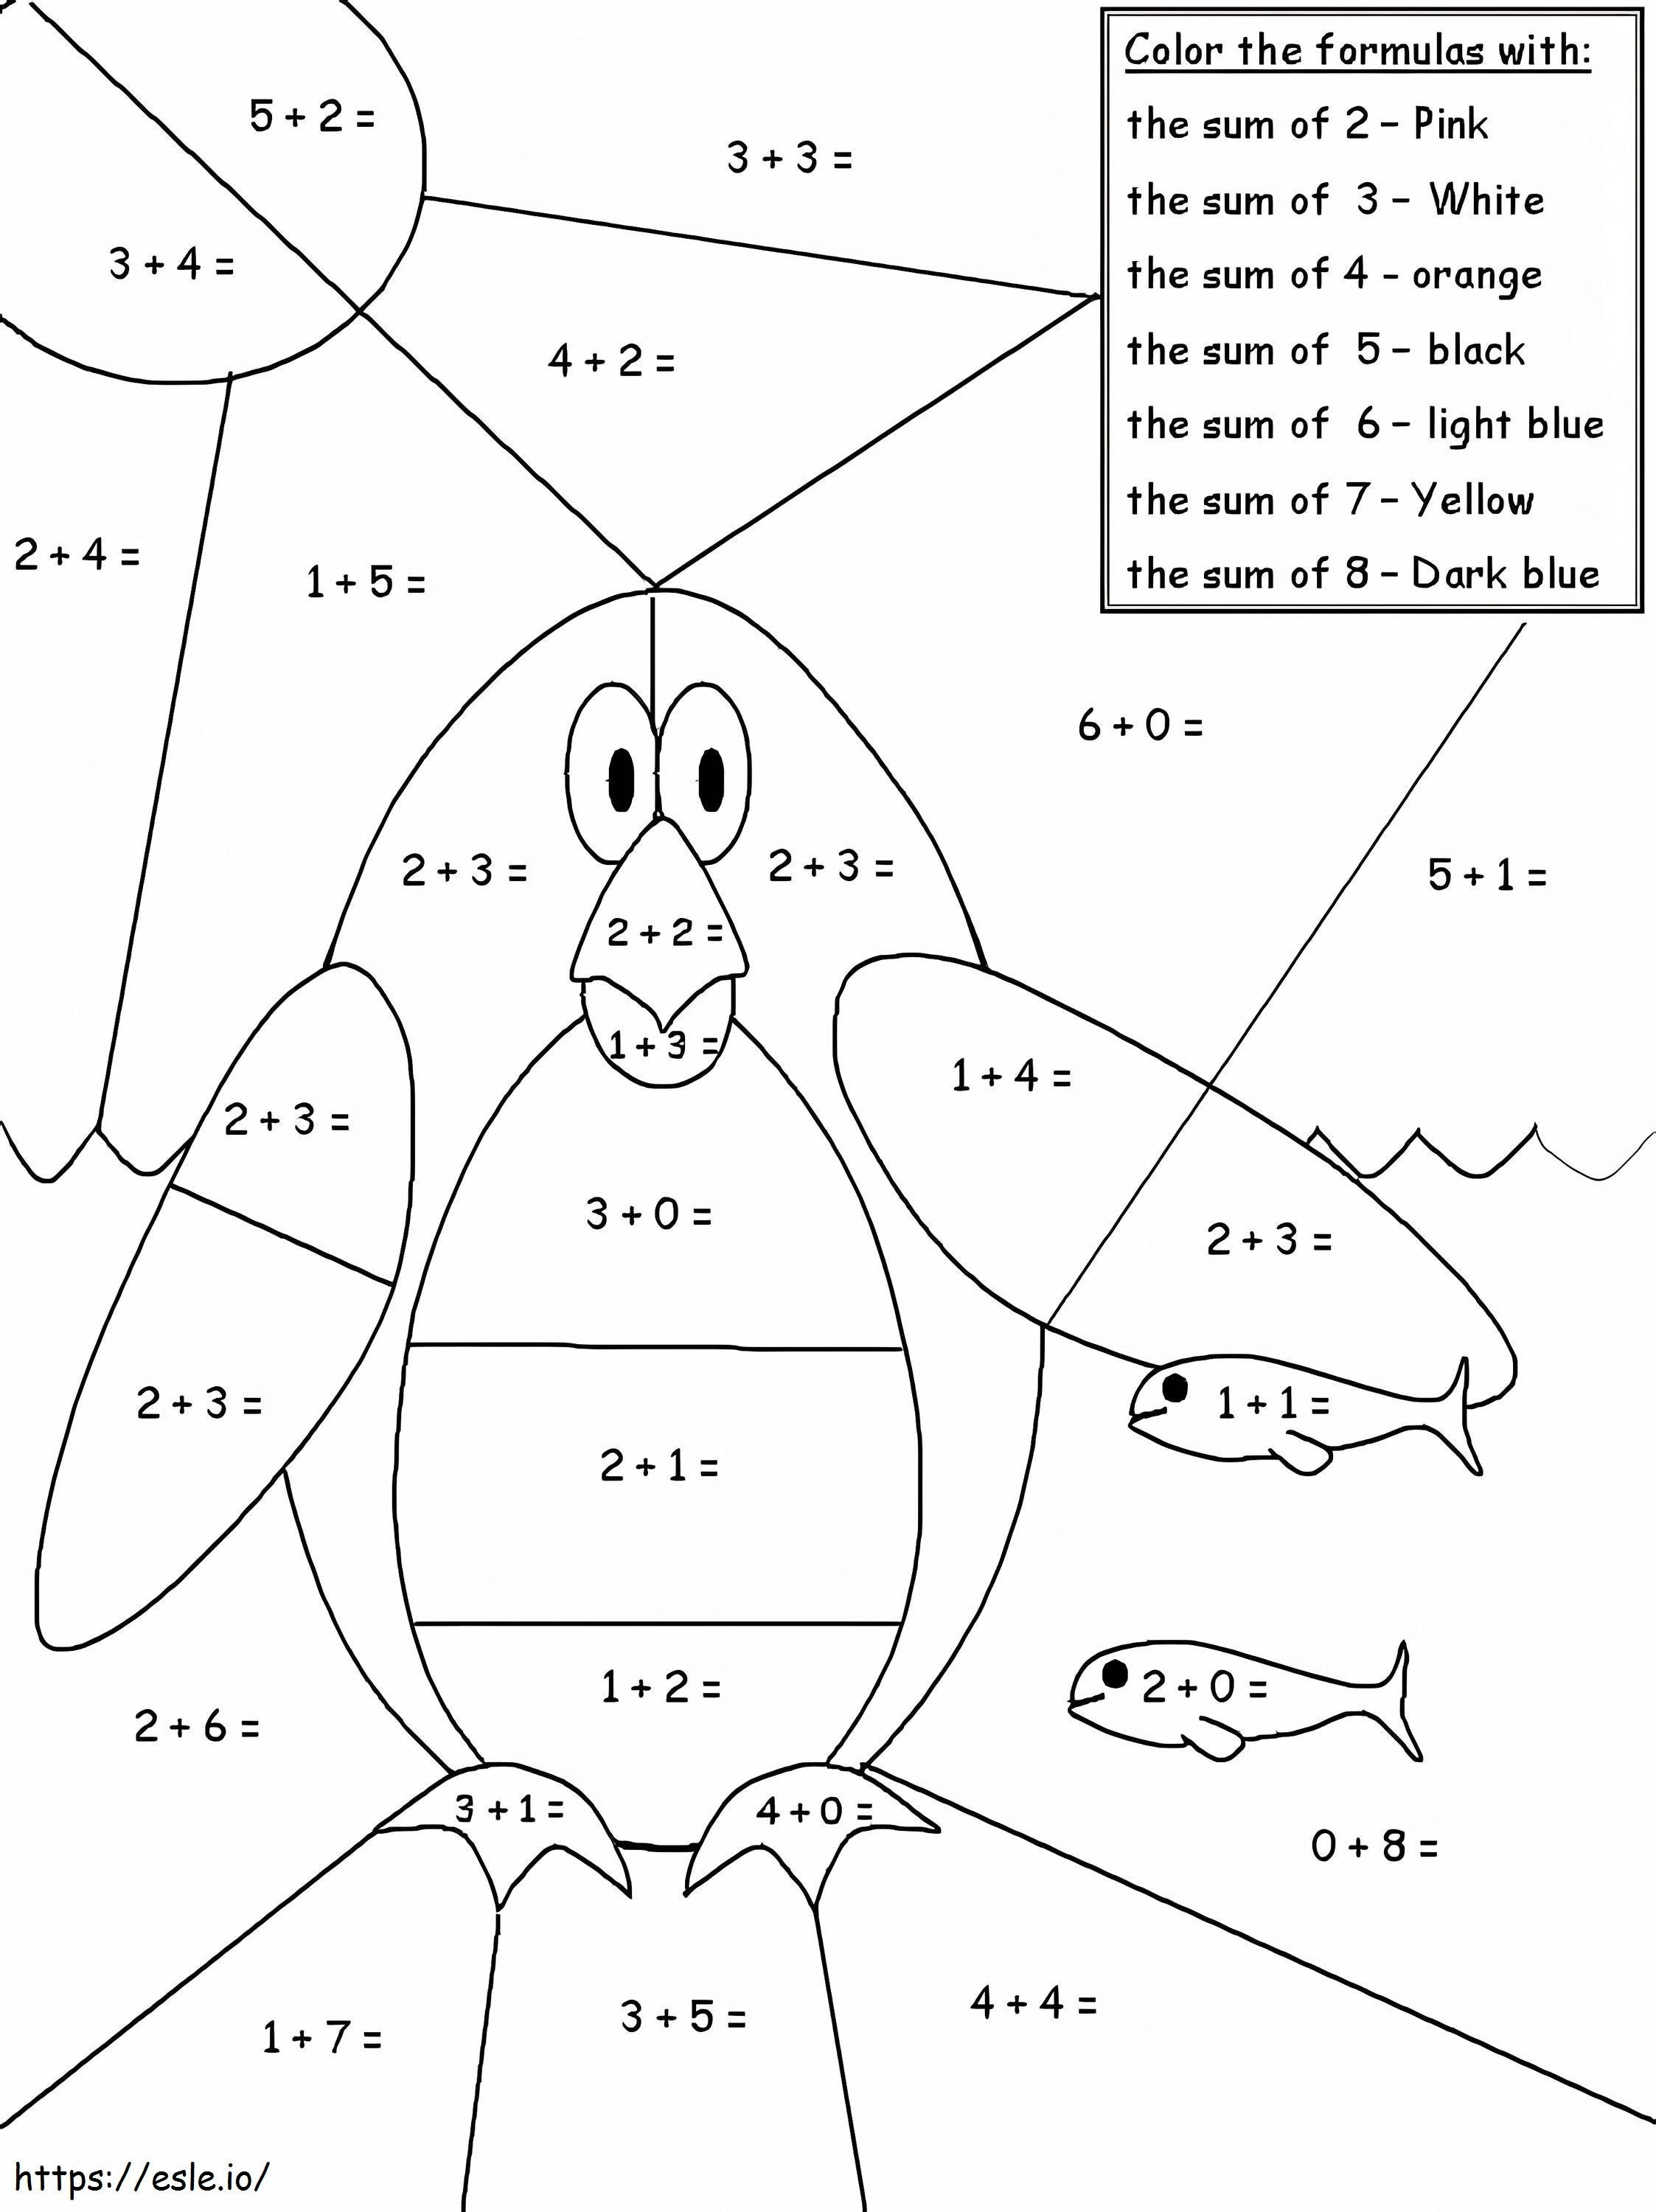 Fișă de matematică pinguin de colorat